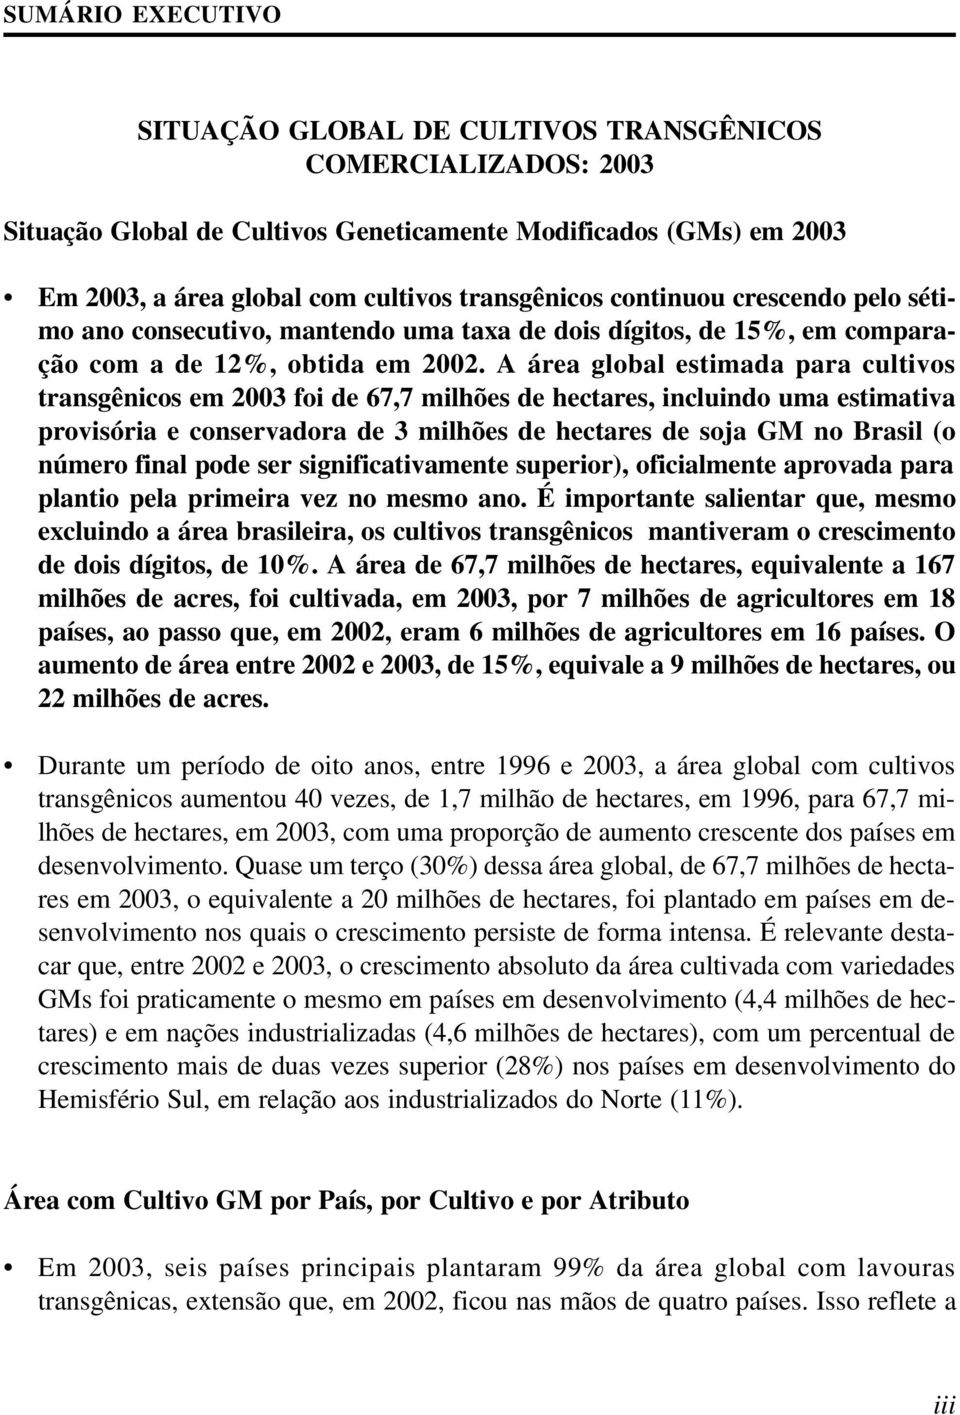 A área global estimada para cultivos transgênicos em 2003 foi de 67,7 milhões de hectares, incluindo uma estimativa provisória e conservadora de 3 milhões de hectares de soja GM no Brasil (o número